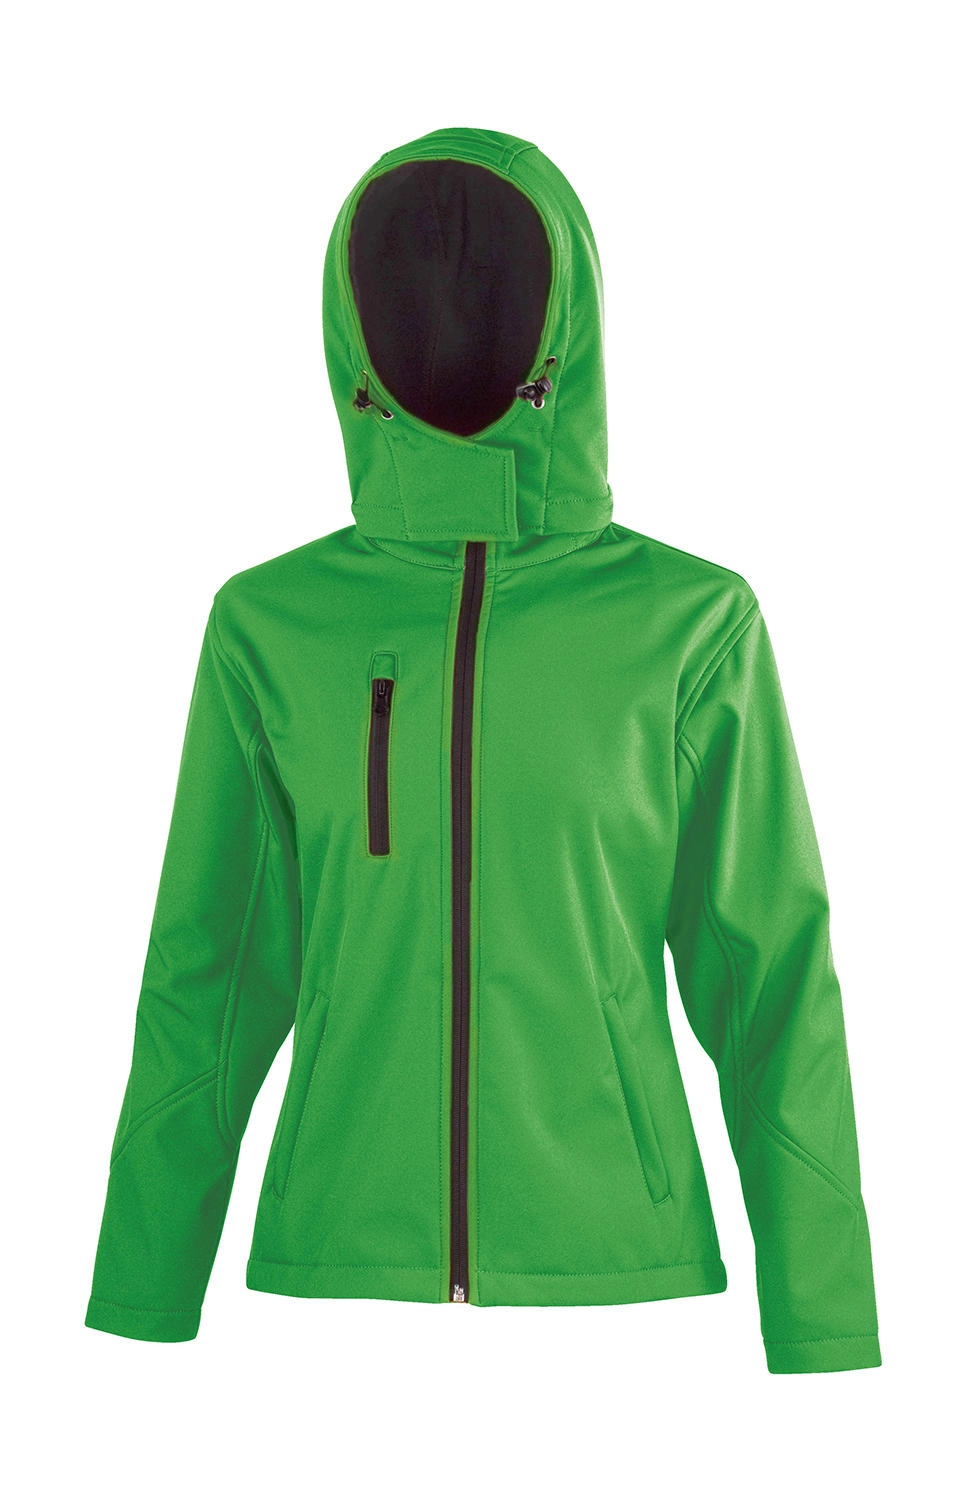 Ladies TX Performance Hooded Softshell Jacket zum Besticken und Bedrucken in der Farbe Vivid Green/Black mit Ihren Logo, Schriftzug oder Motiv.